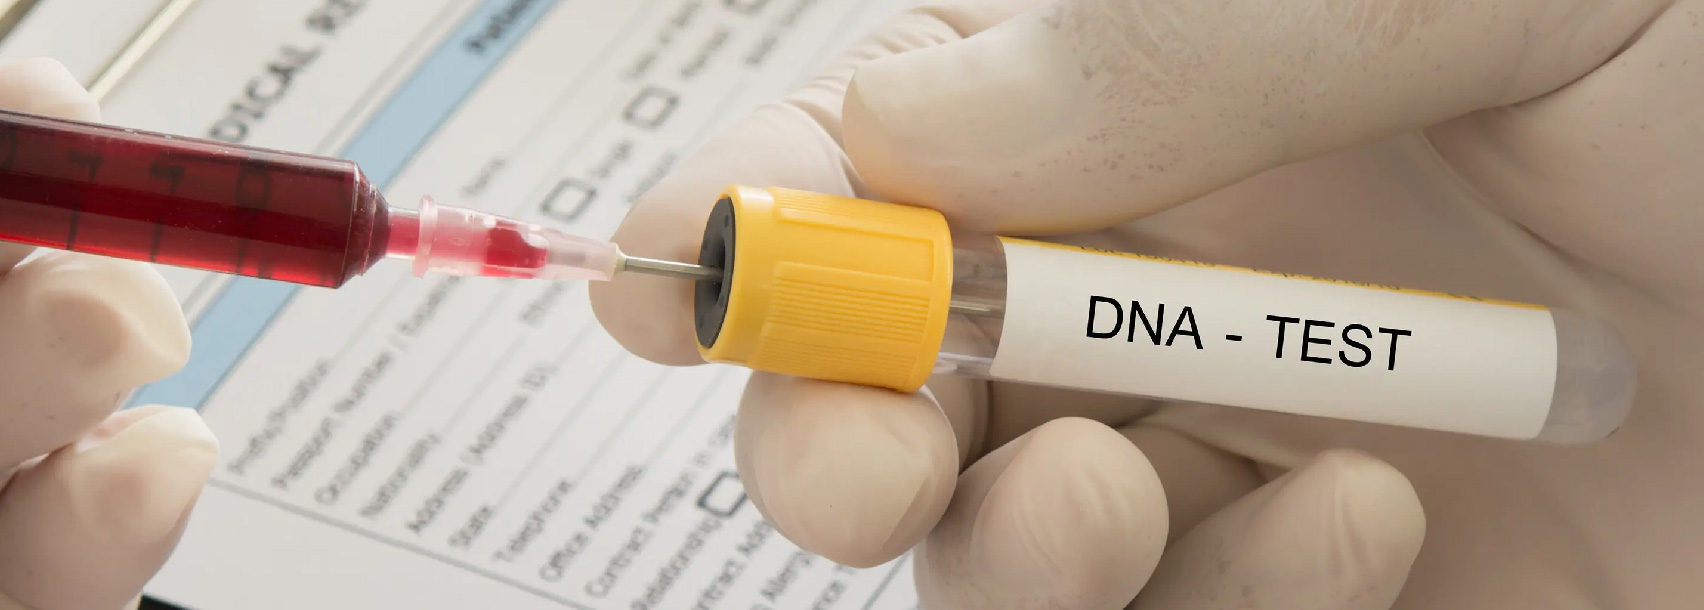 آزمایش DNA قبل از ازدواج